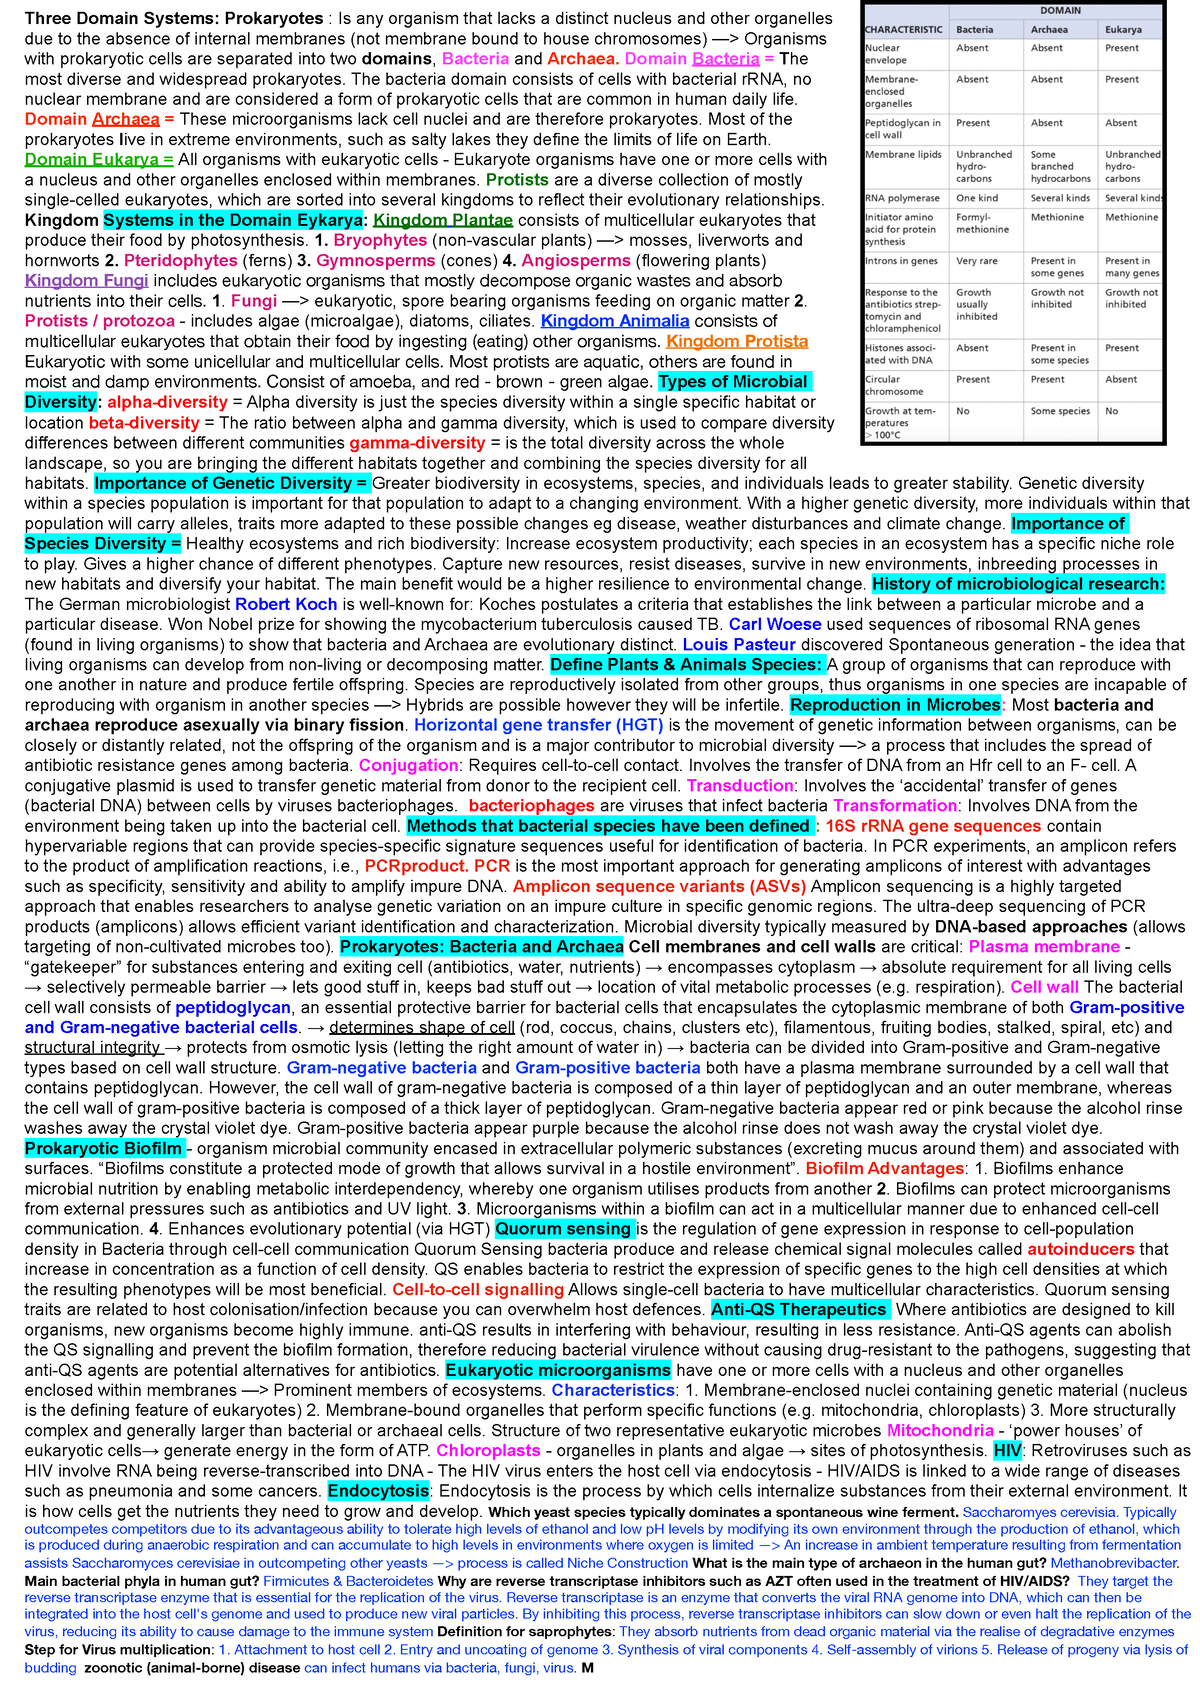 Exam Cheatsheet 108 - Three Domain Systems: Prokaryotes : Is any ...